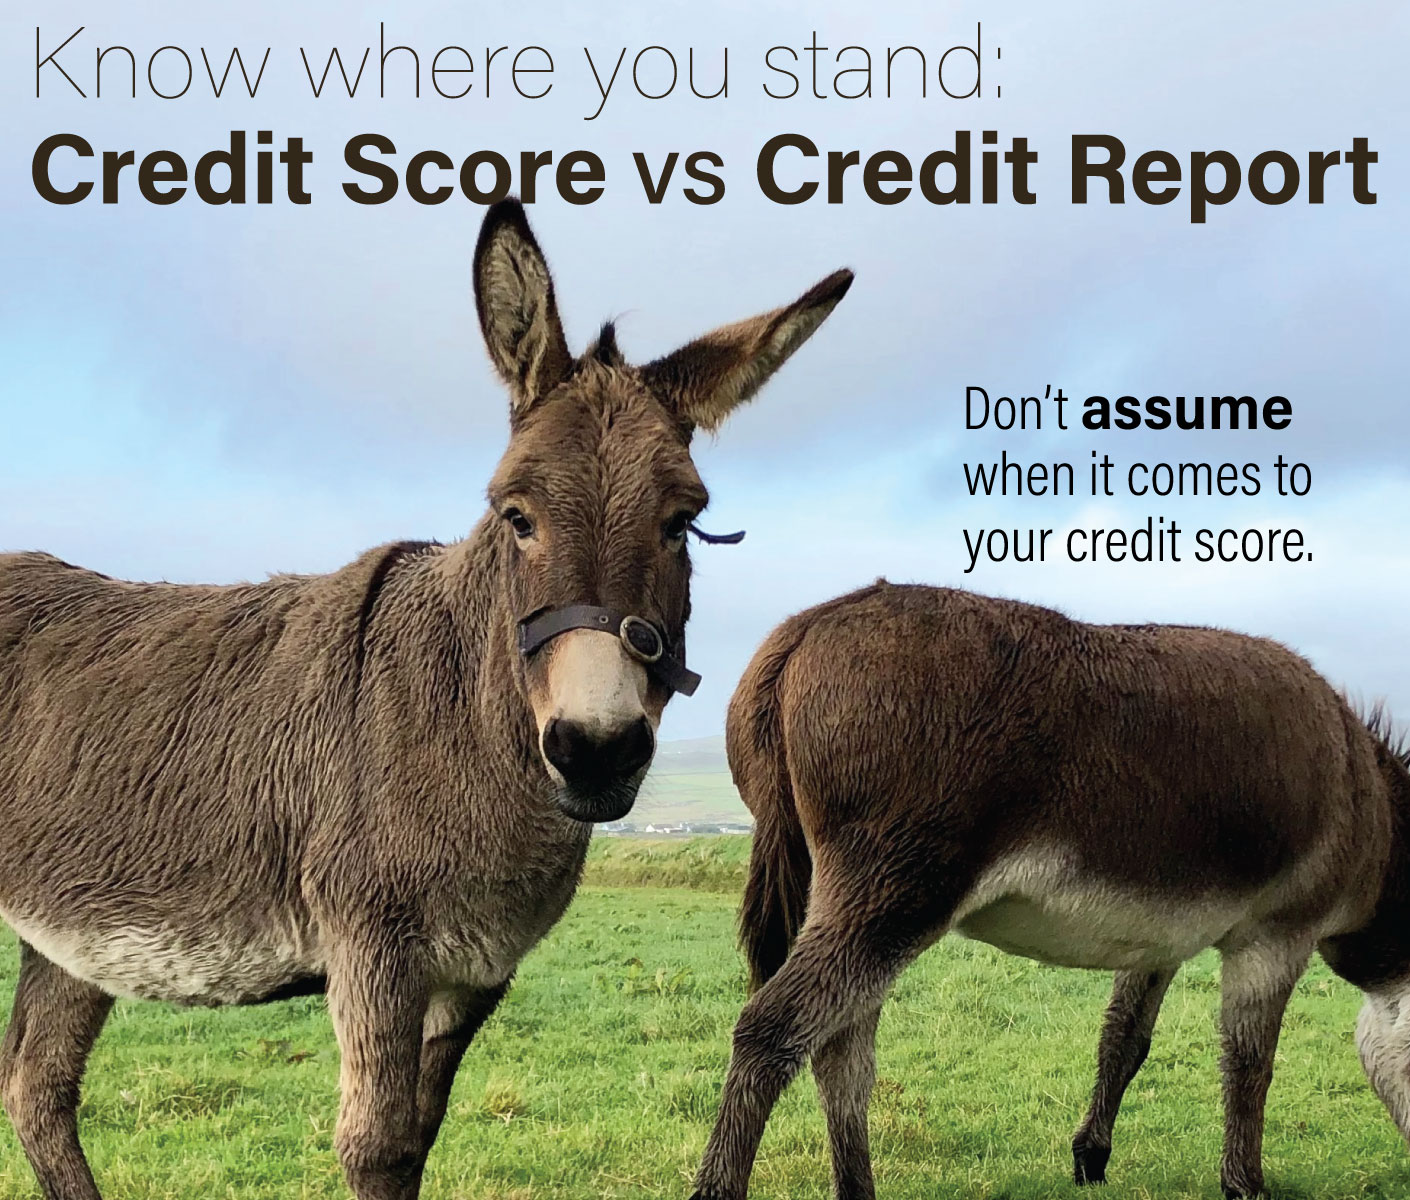 Credit Reports Vs Credit Scores